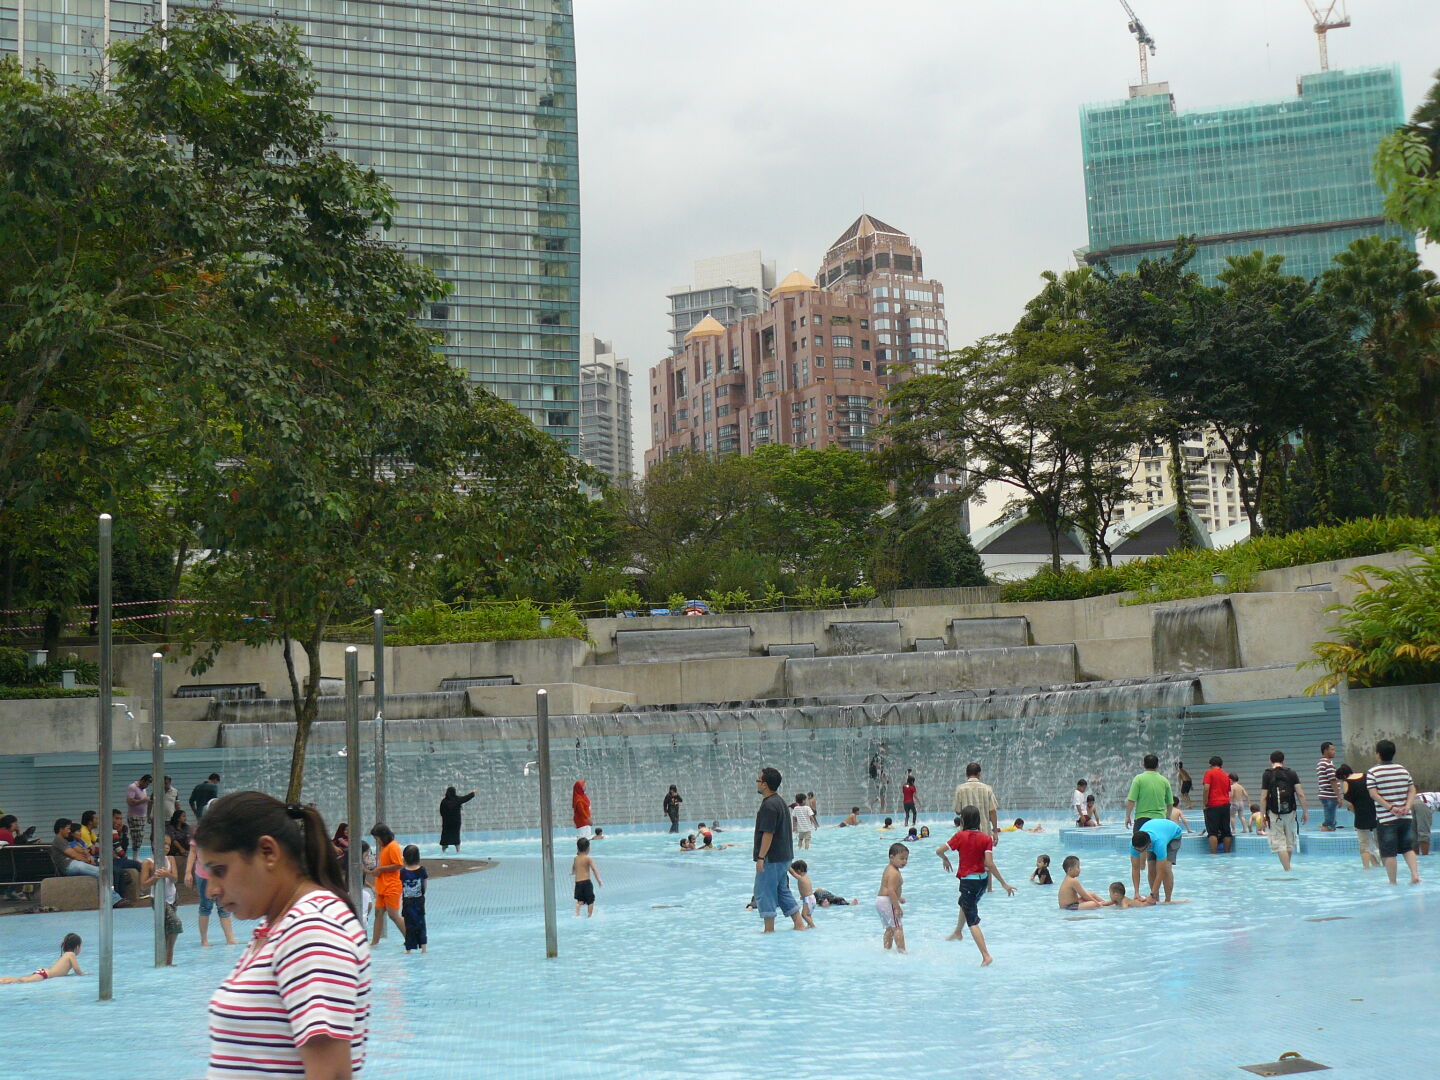 Wasserspielplatz im Park.